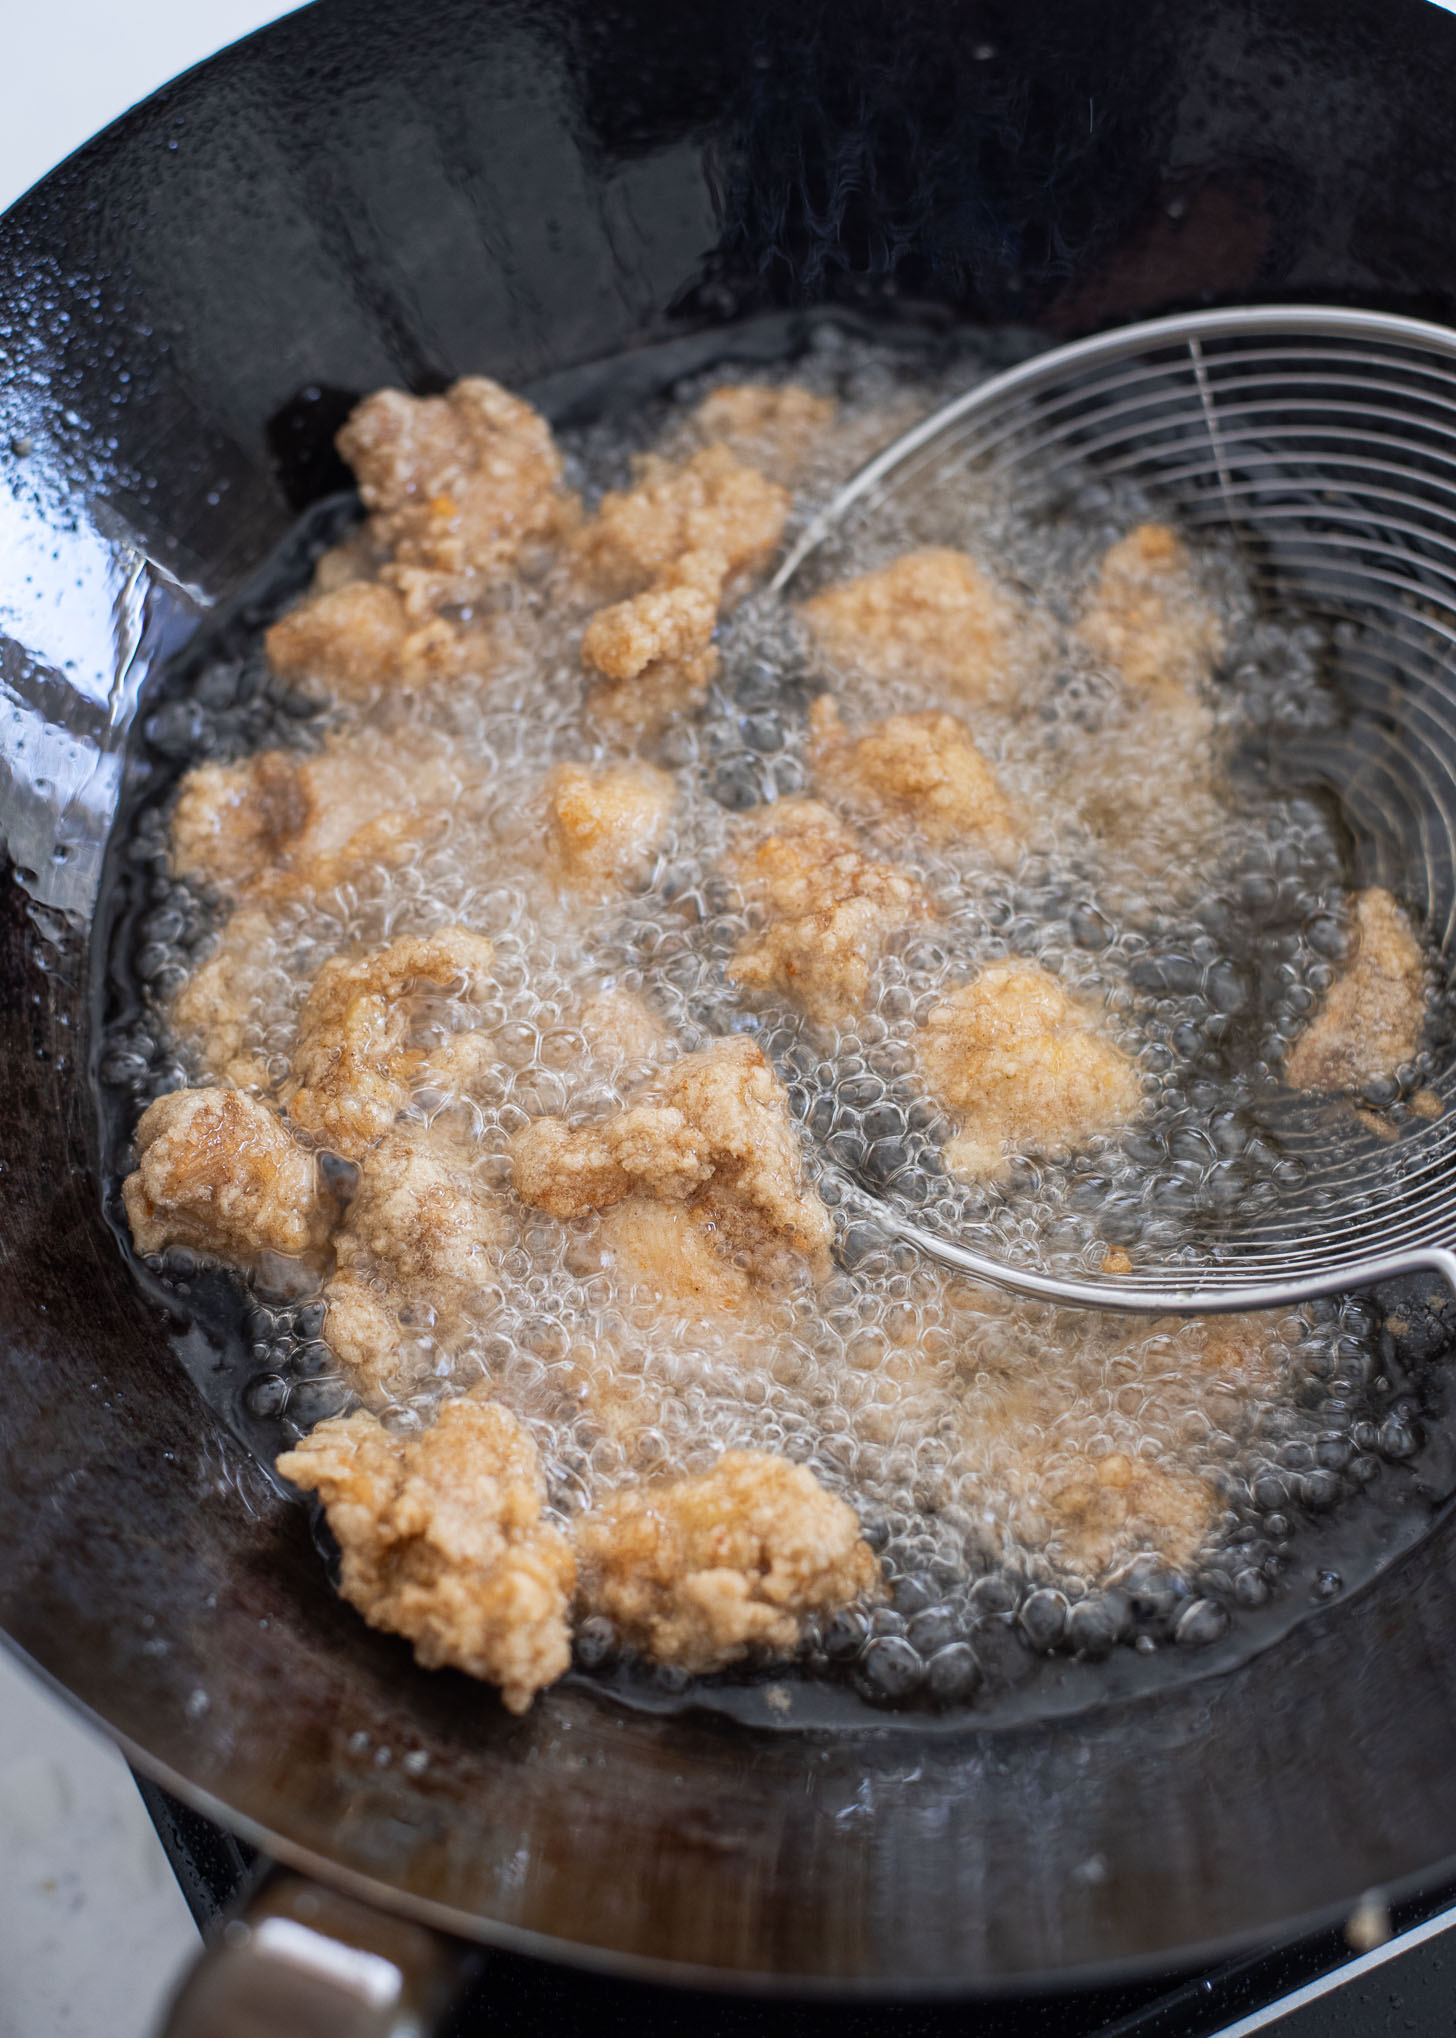 Chicken pieces in second deep-frying in hot oil ensuing golden brown crispness.